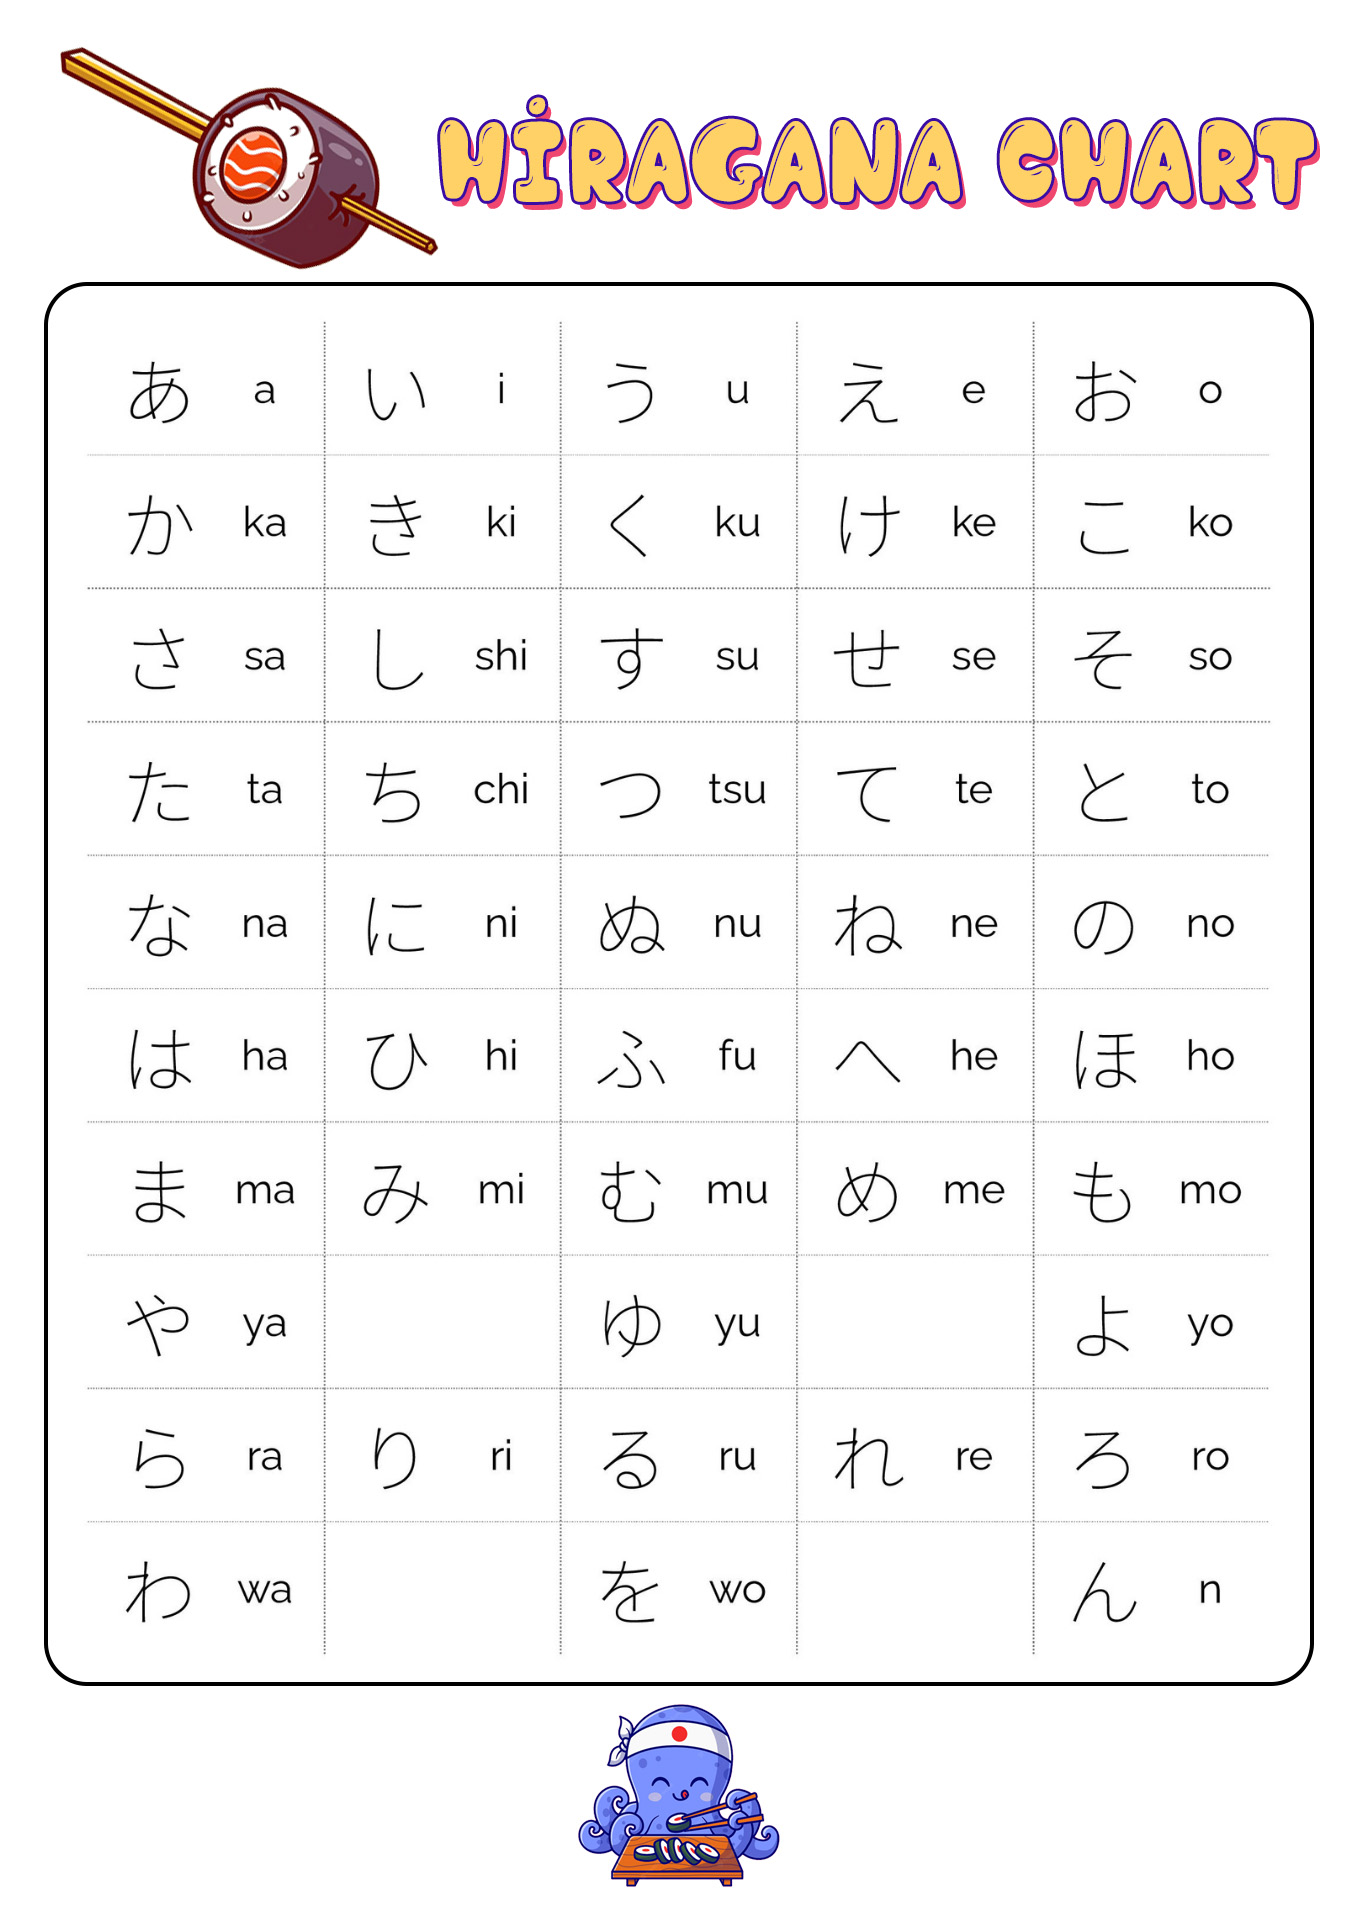 Learning Japanese Hiragana Chart Image